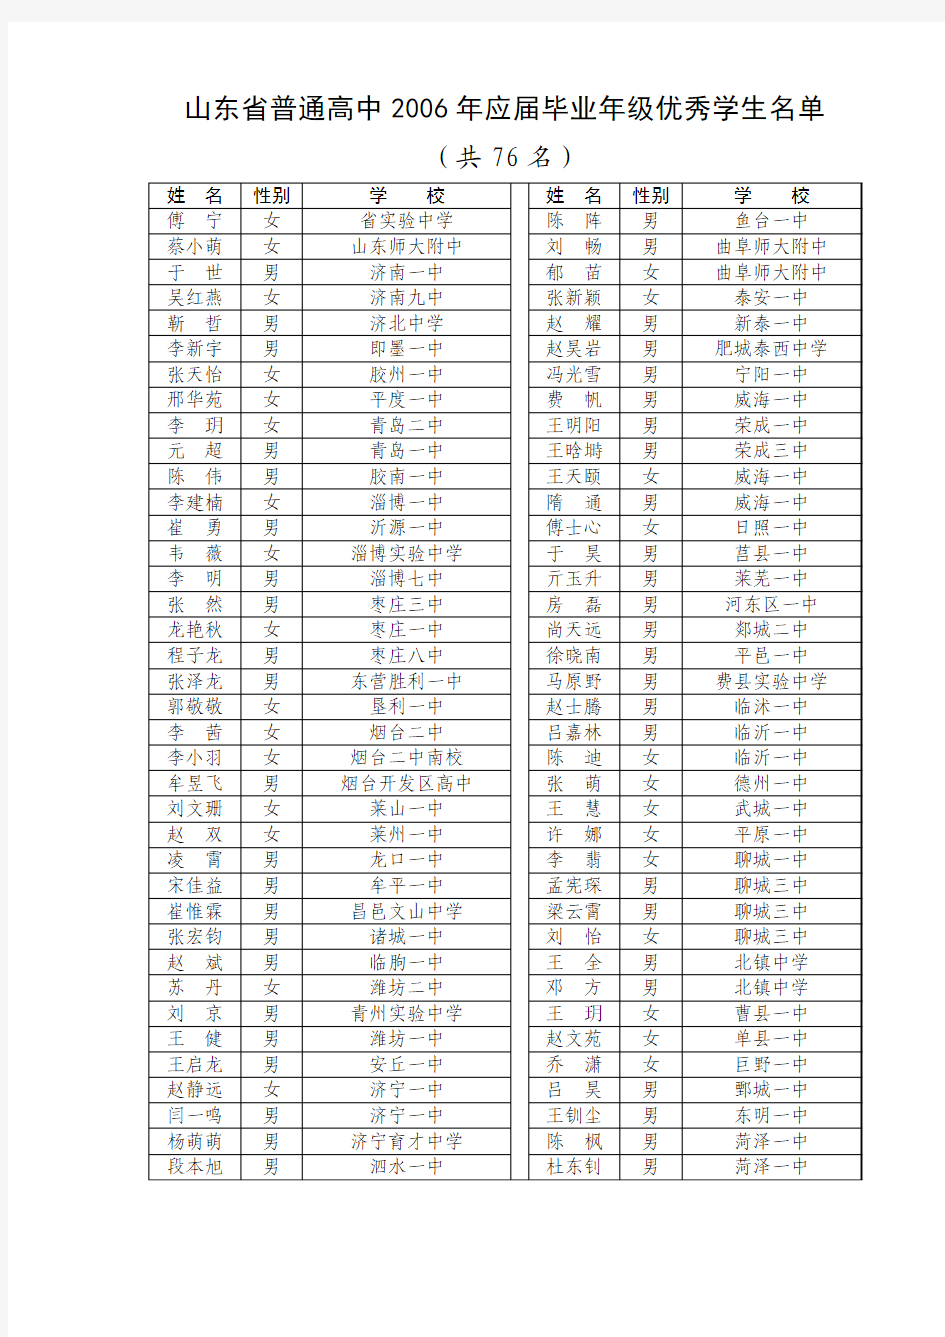 山东省普通高中2006年应届毕业年级优秀学生名单(共76名)